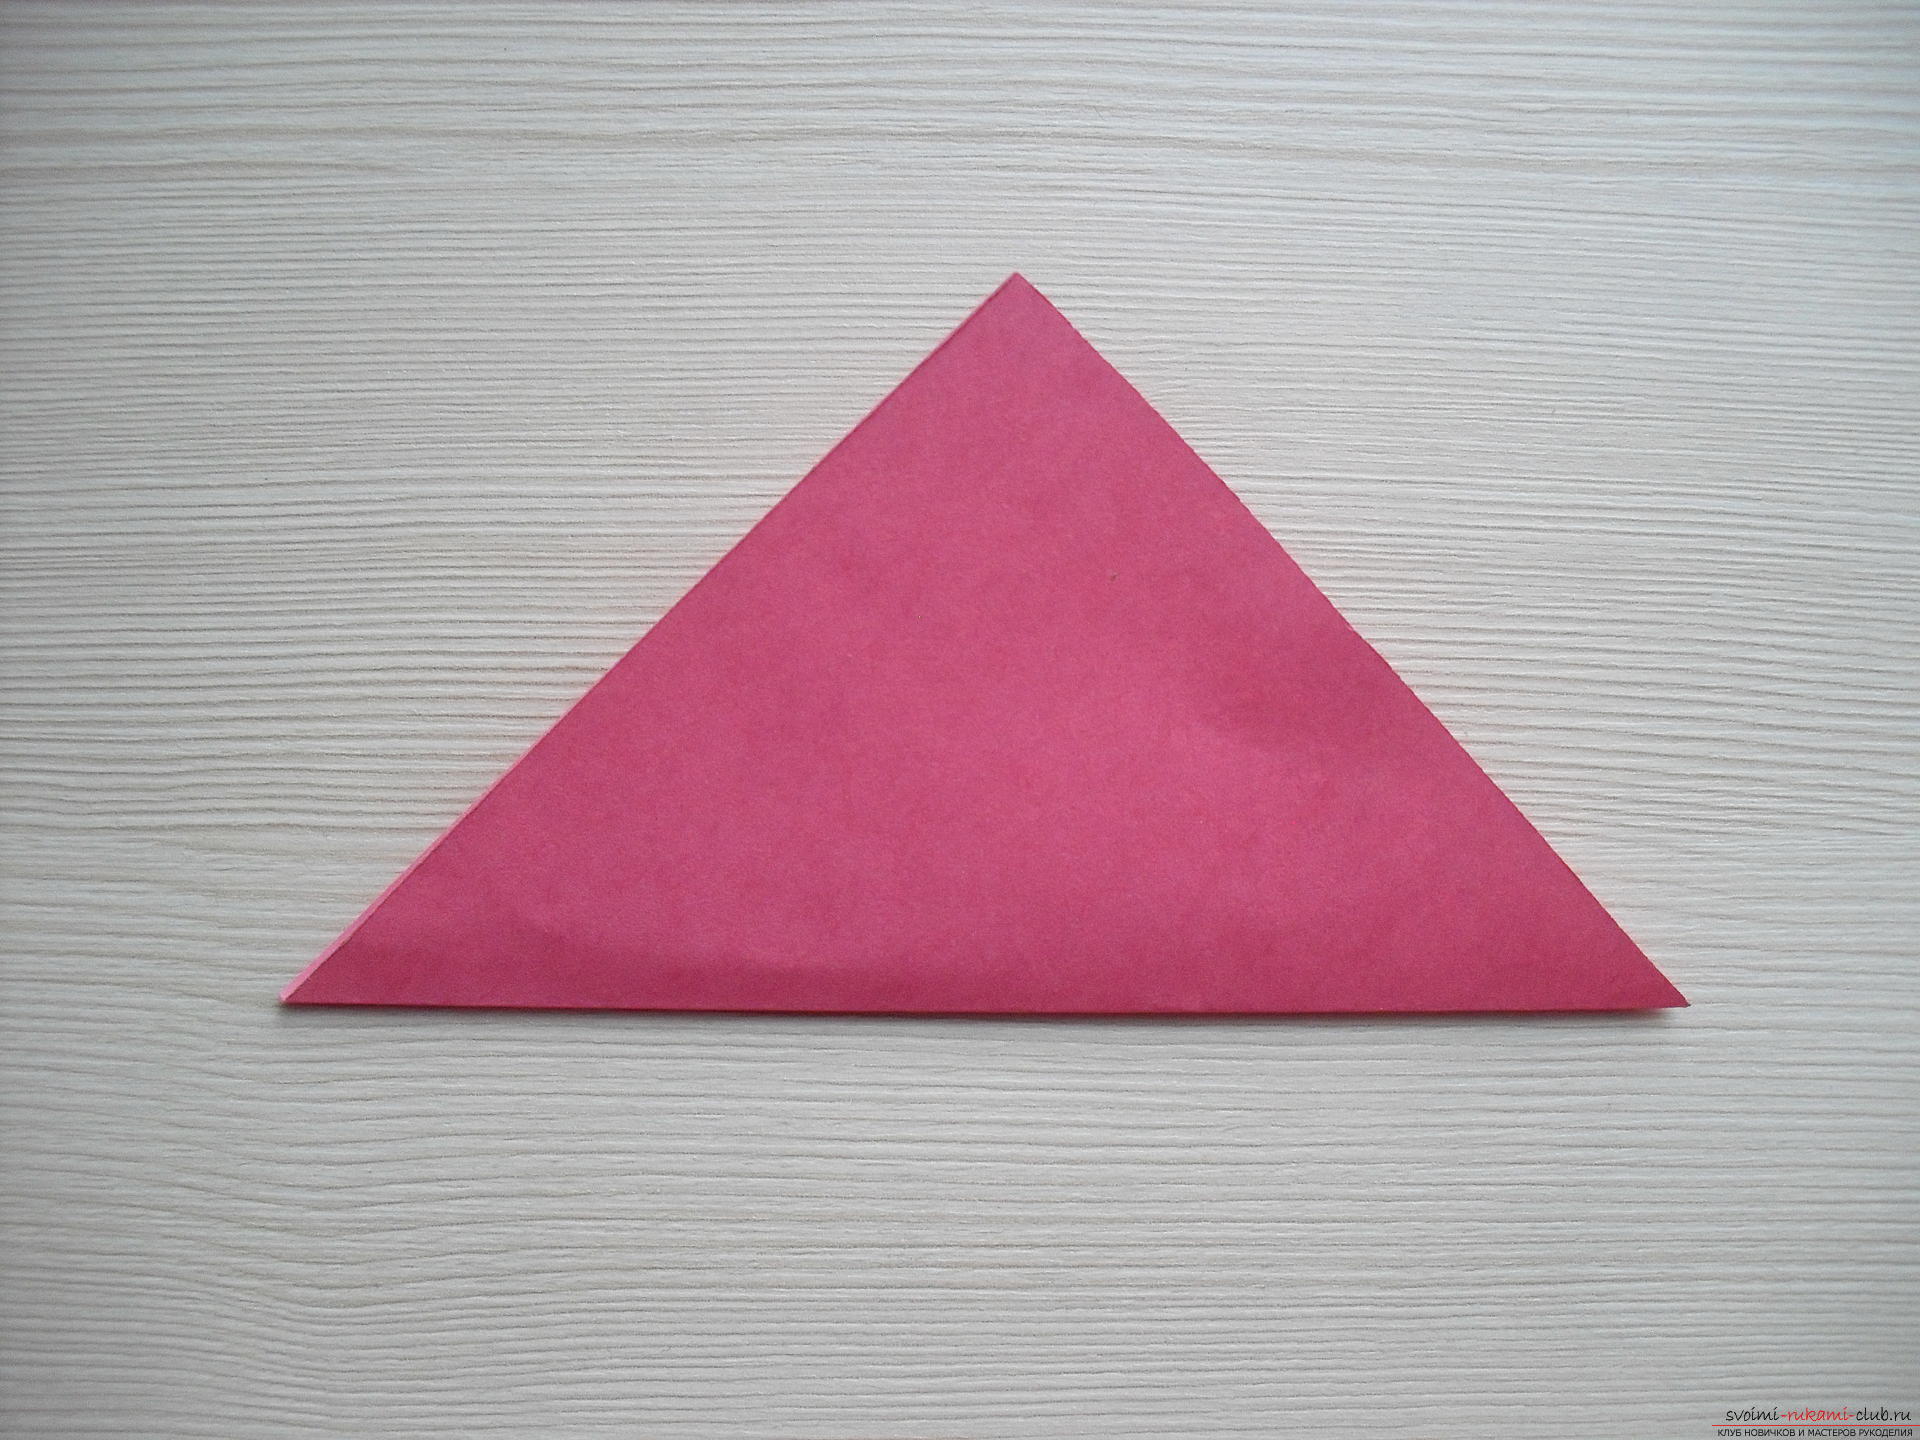 Этот мастер-класс научит как сделать цветок-оригами из бумаги.. Фото №3